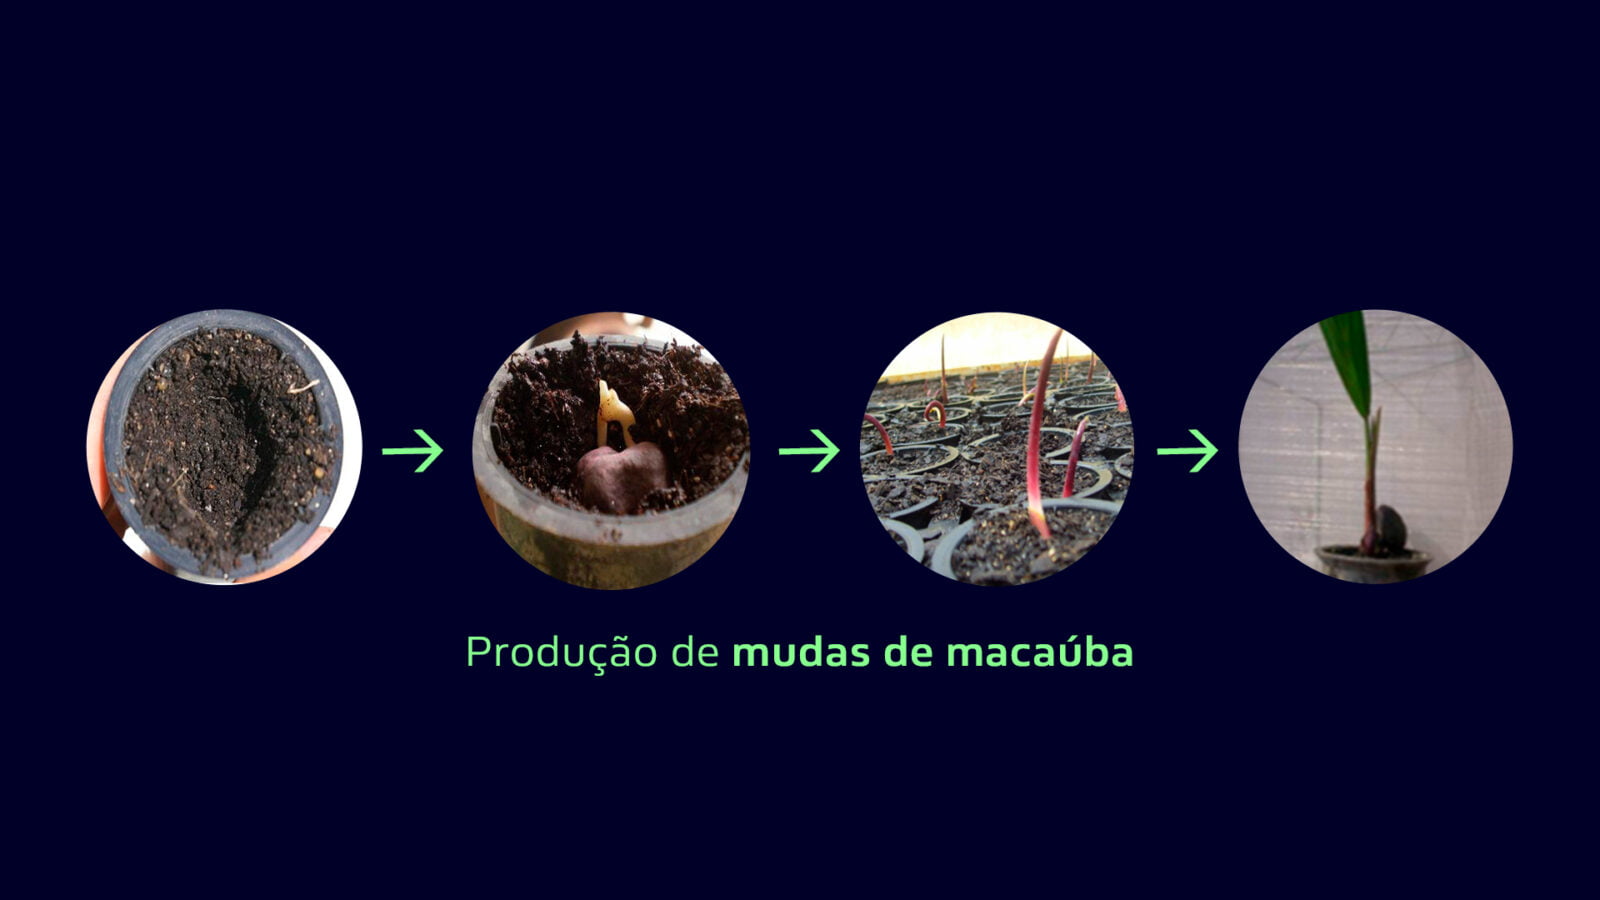 Figura 3. Etapas de pré-viveiro na produção de mudas de macaúba, incluindo da semeadura nos tubetes até a fase ideal para transplantio. Fonte: REMAPE 